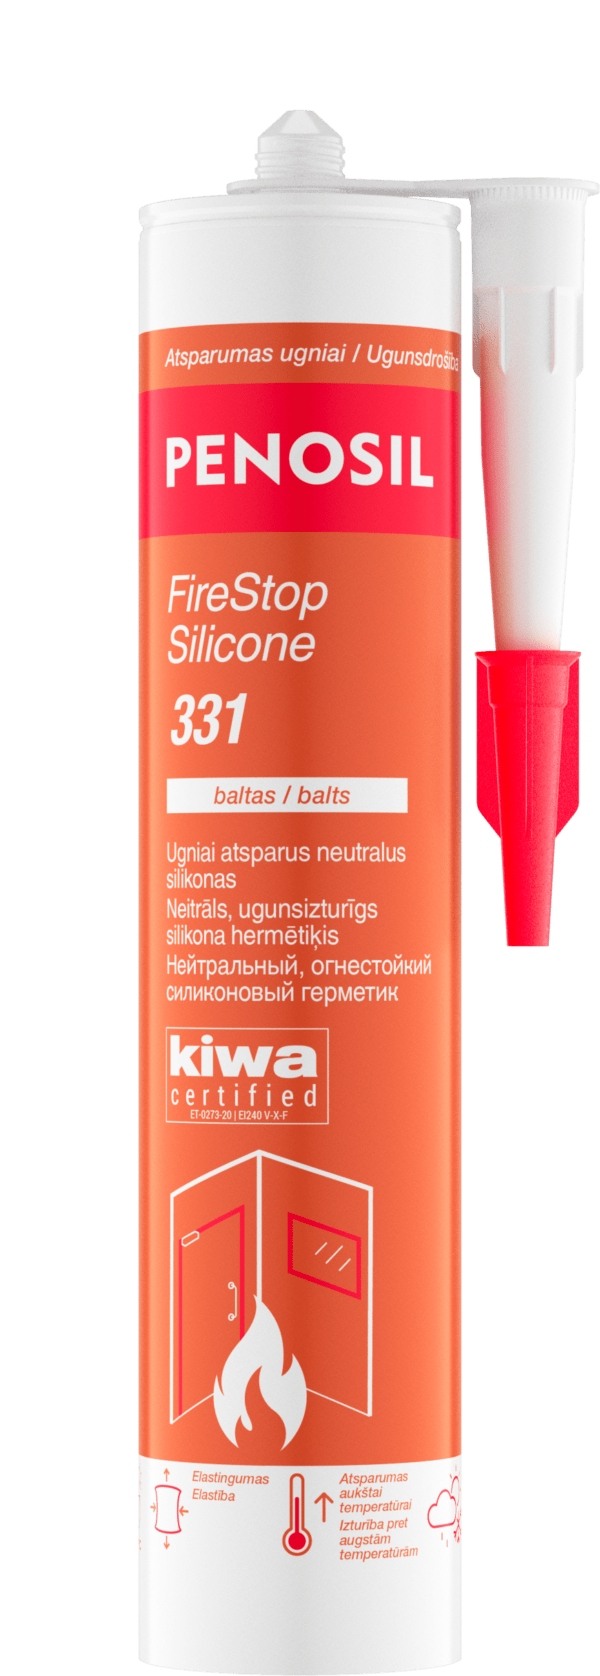 FireStop Silicone 331 Neitrāls, ugunsizturīgs silikona hermētiķis